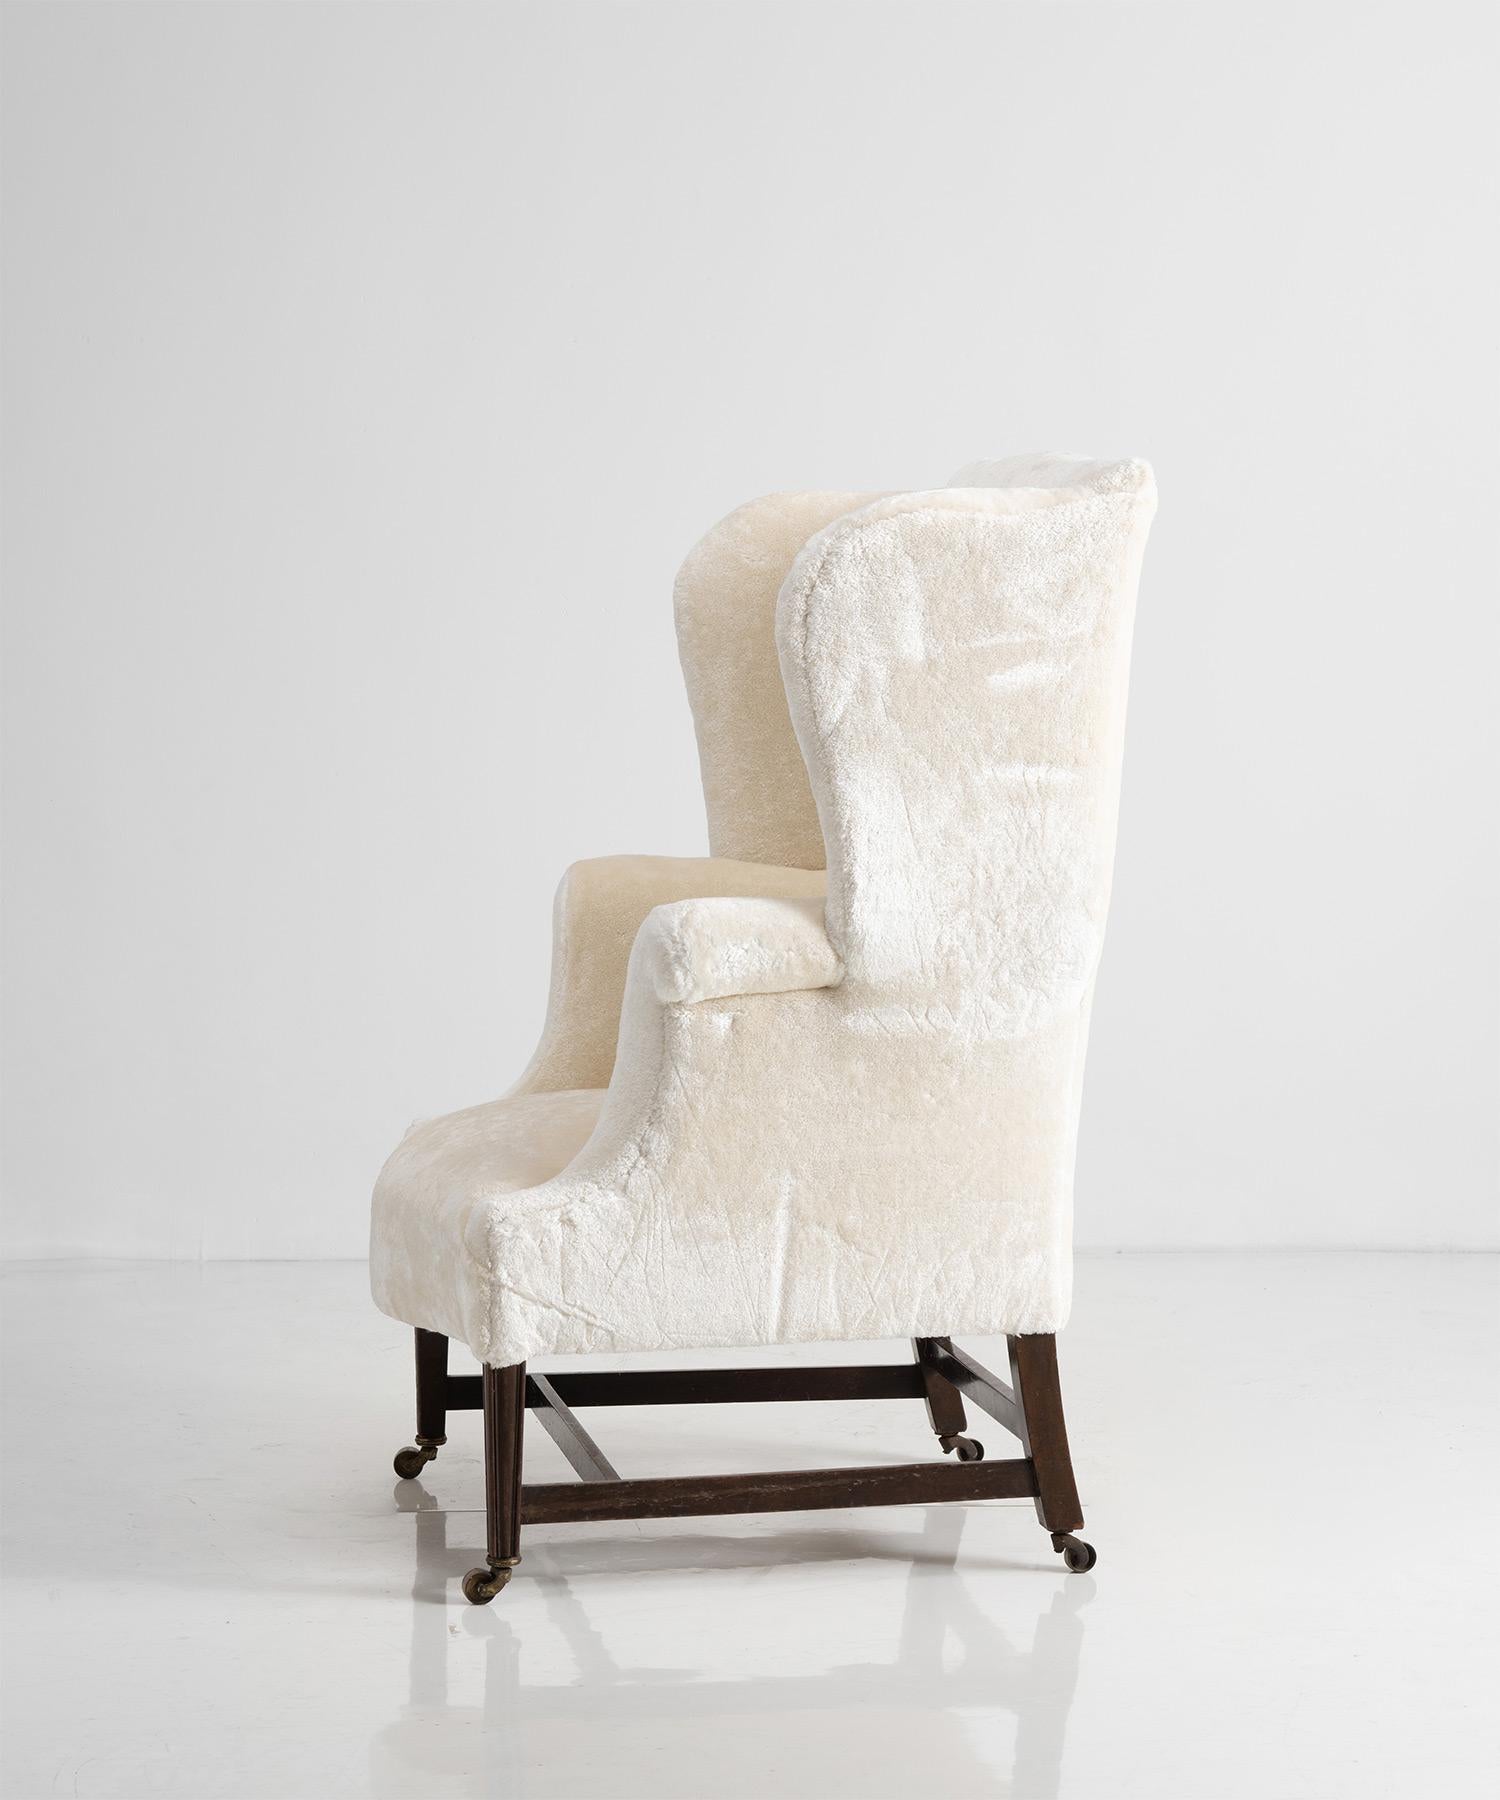 19th Century Wingback Armchair in Cotton Blend by Dedar Milano, England circa 1800